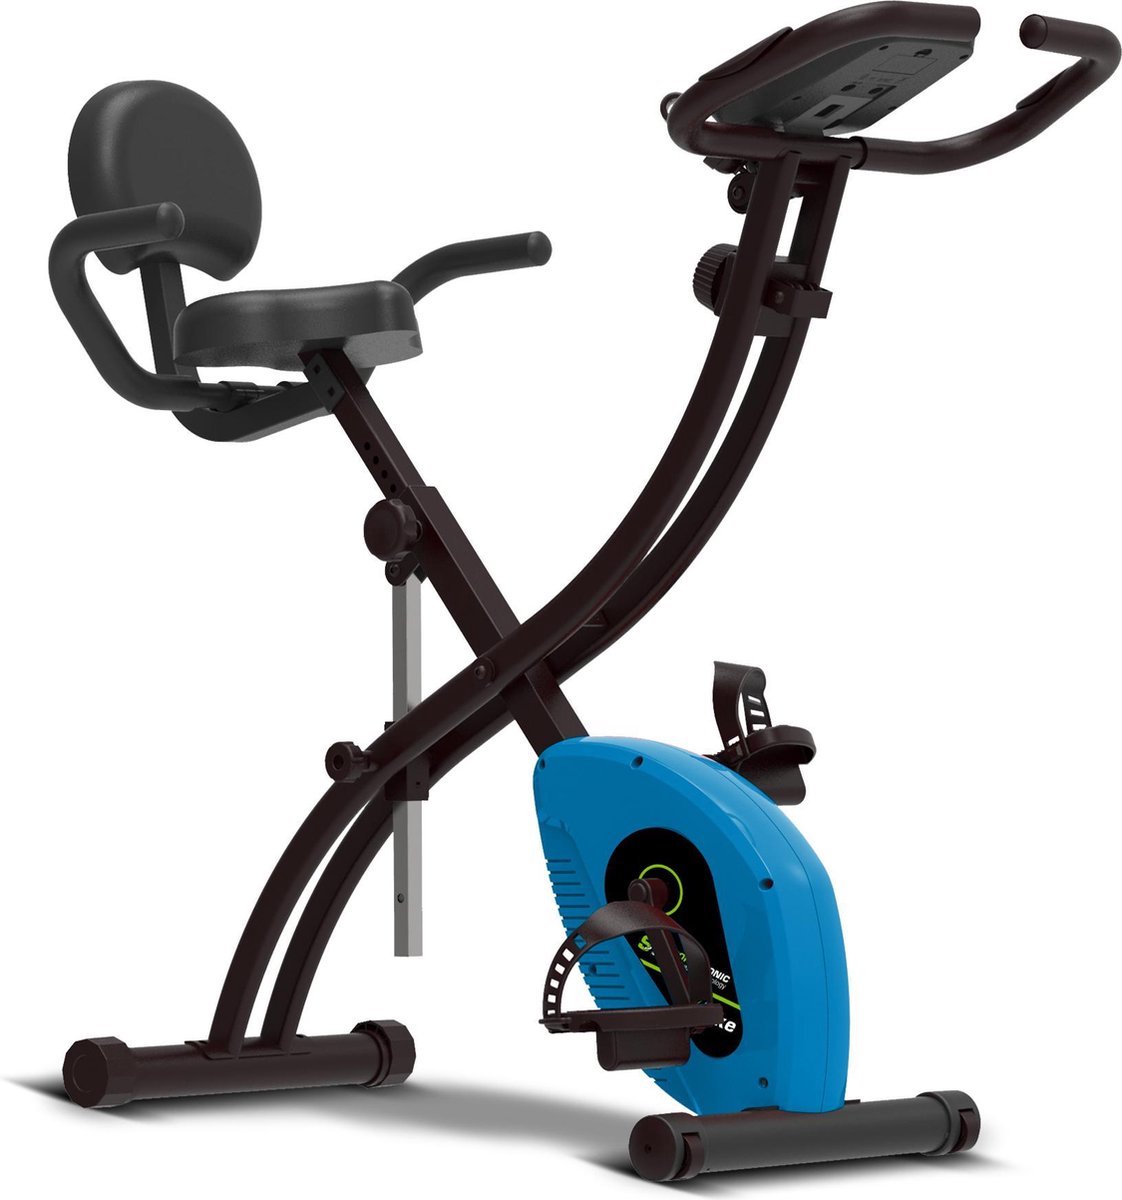 Z-line Hometrainer fiets - Opvouwbaar - Fitness - Type: ST-X6 - Blauw/Zwart